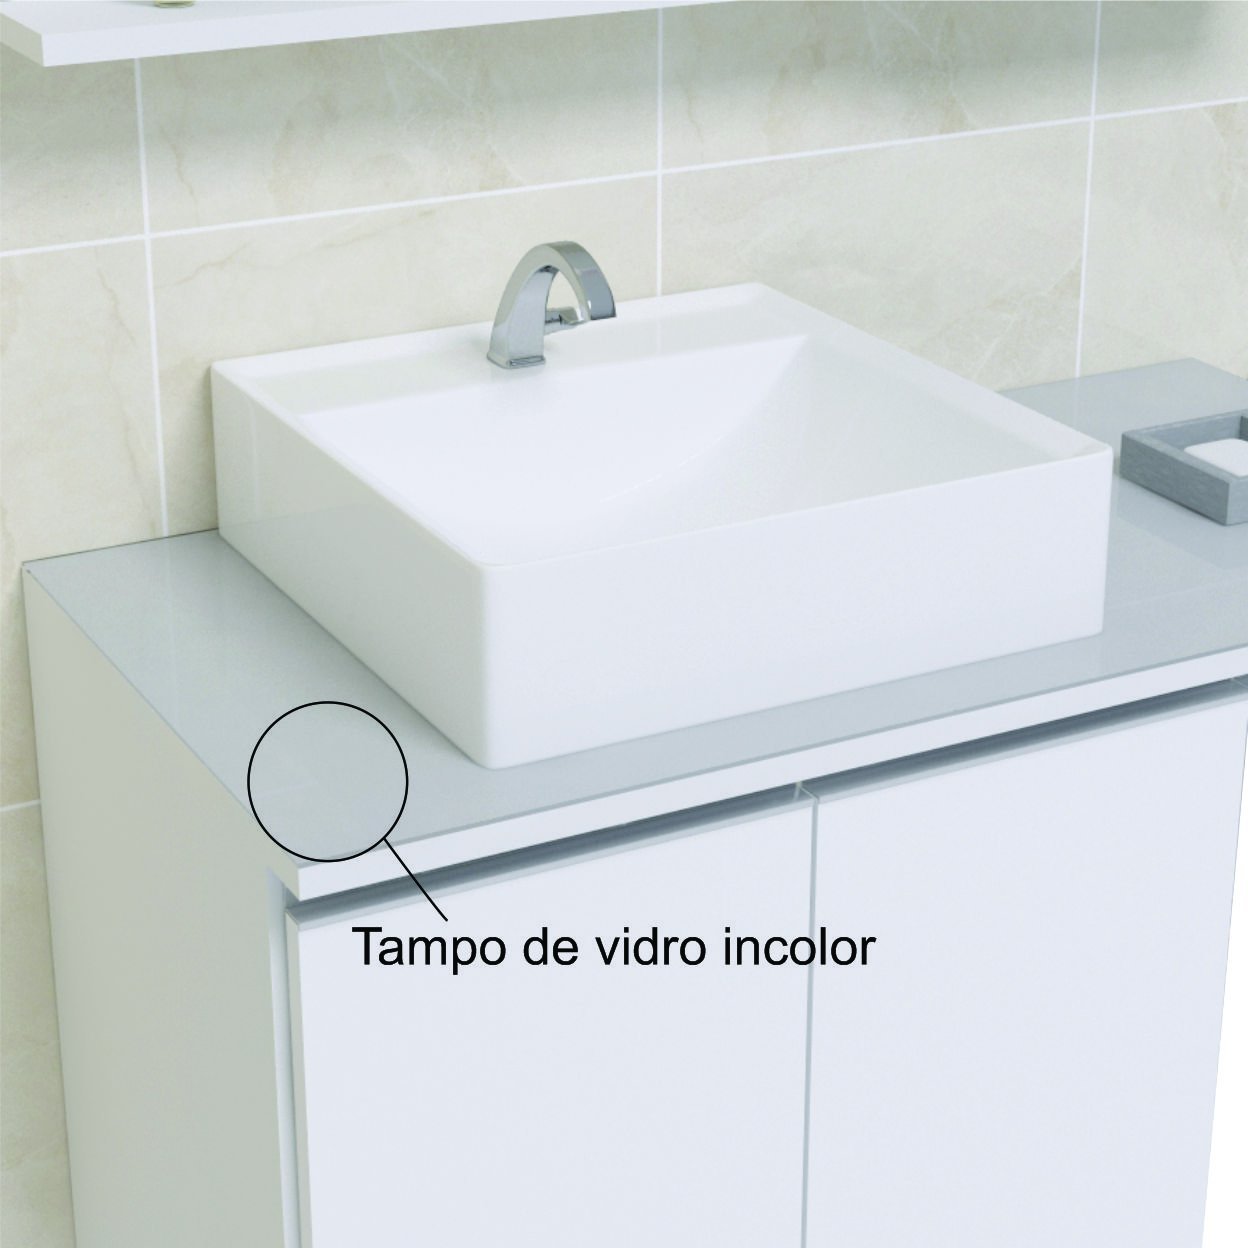 Conjunto Gabinete Banheiro Completo Prisma 60cm - Branco Inteiro COM TAMPO VIDRO - 2